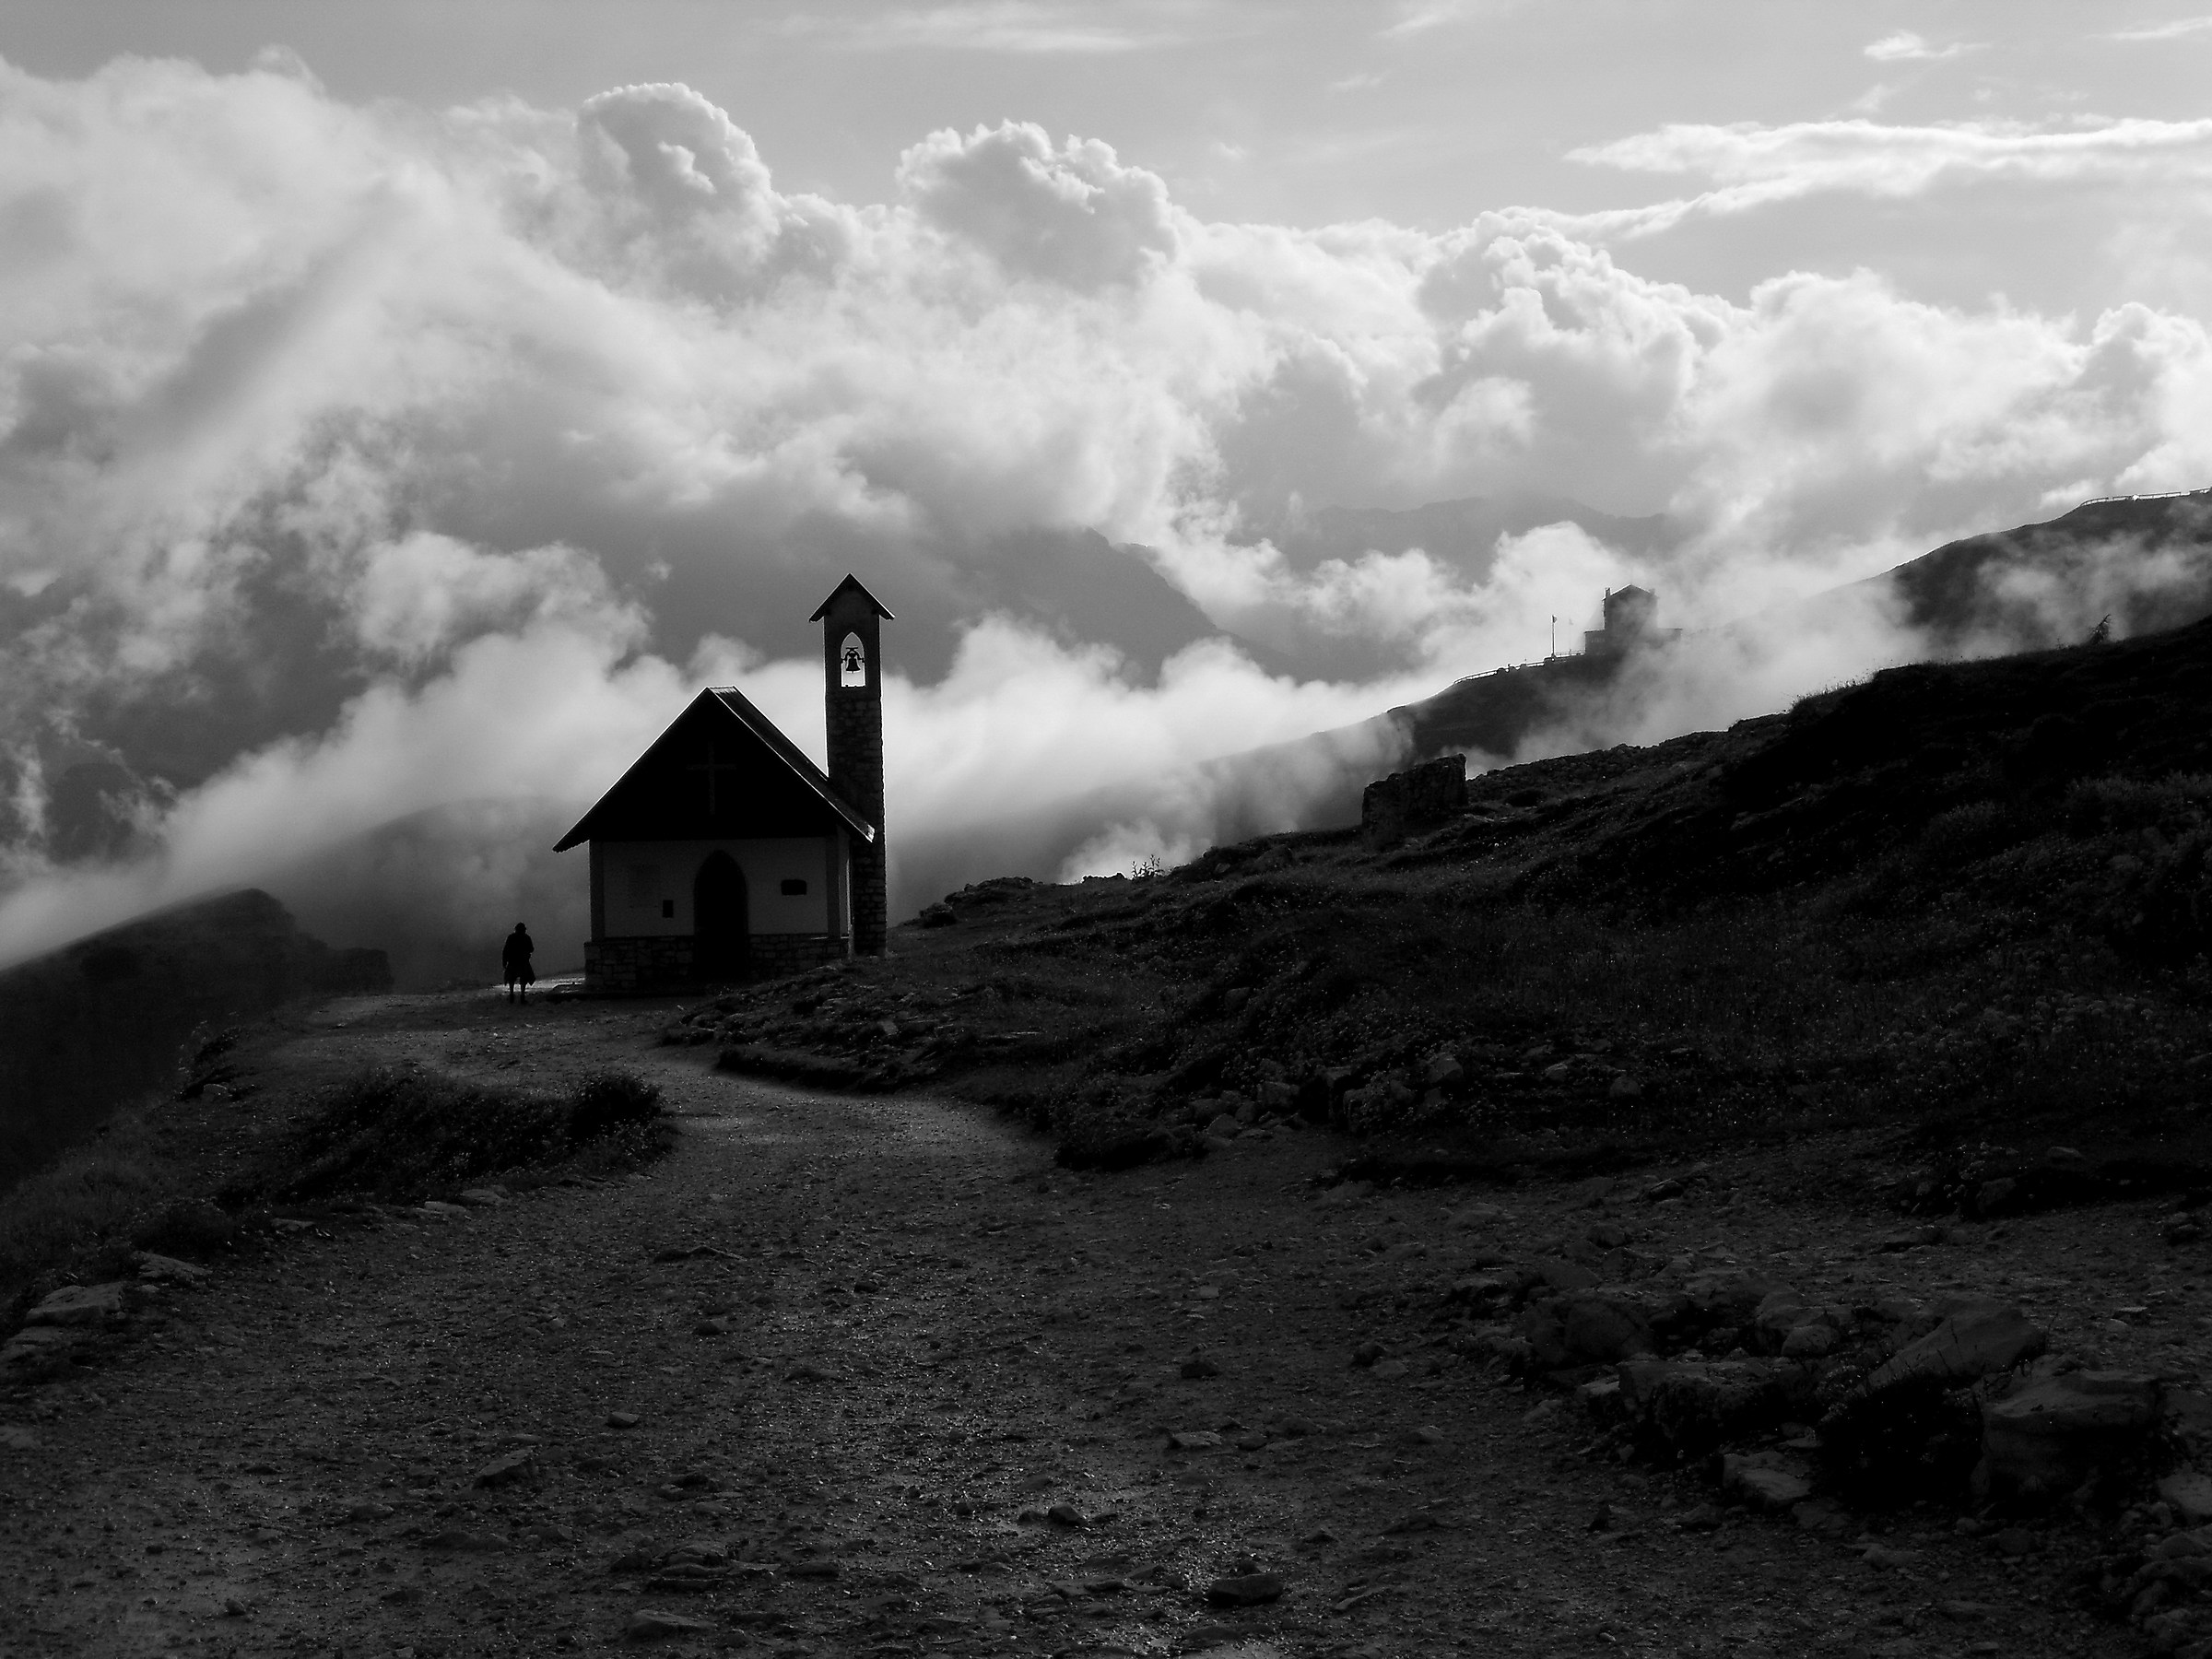 The Cappella degli Alpini in the clouds...